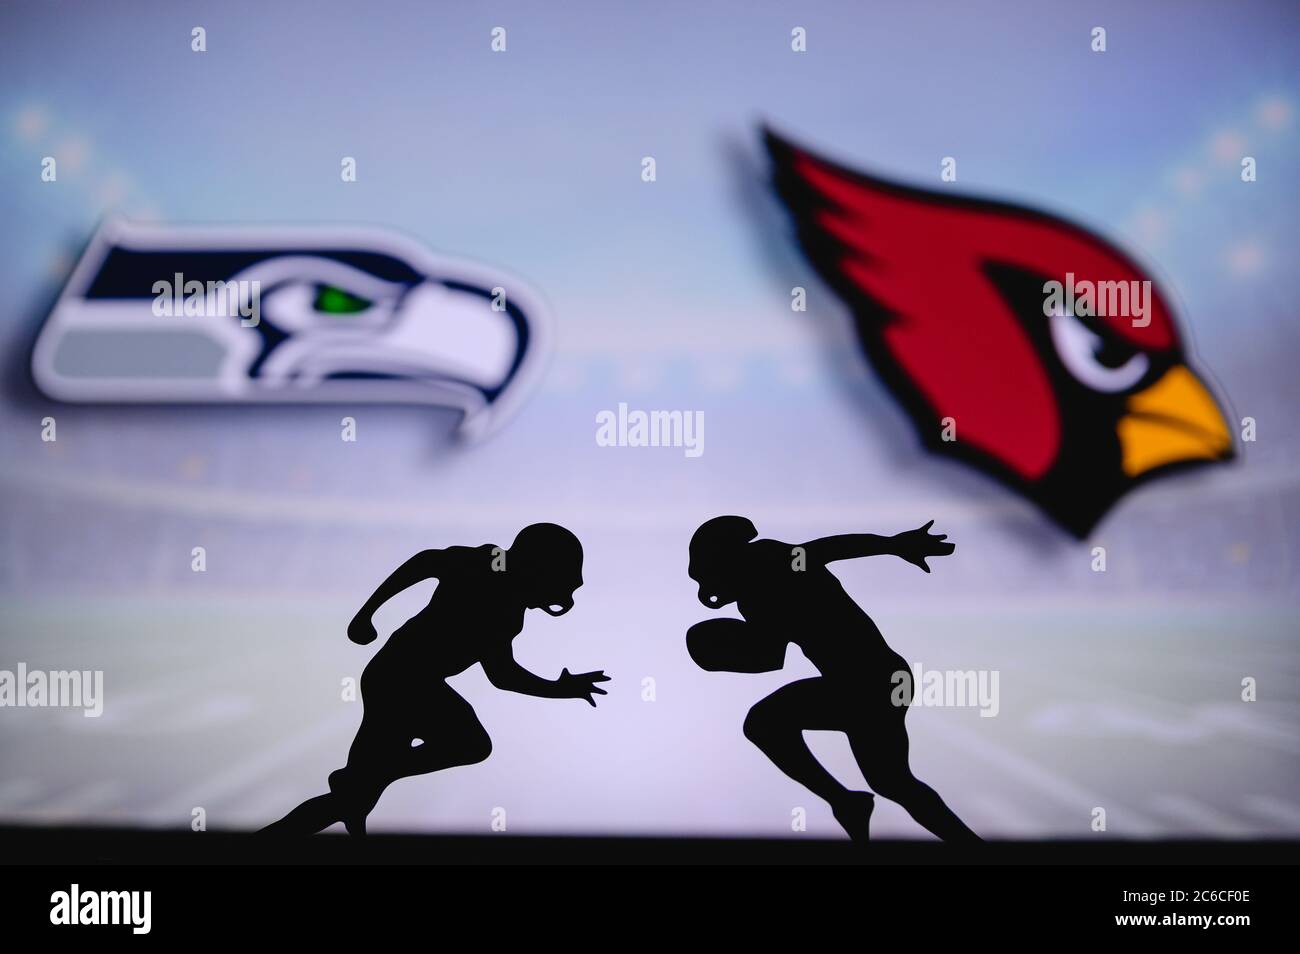 Seattle Seahawks contre Arizona Cardinals . Affiche NFL Match. Deux joueurs de football américain se font face sur le terrain. Logo des clubs à l'arrière Banque D'Images